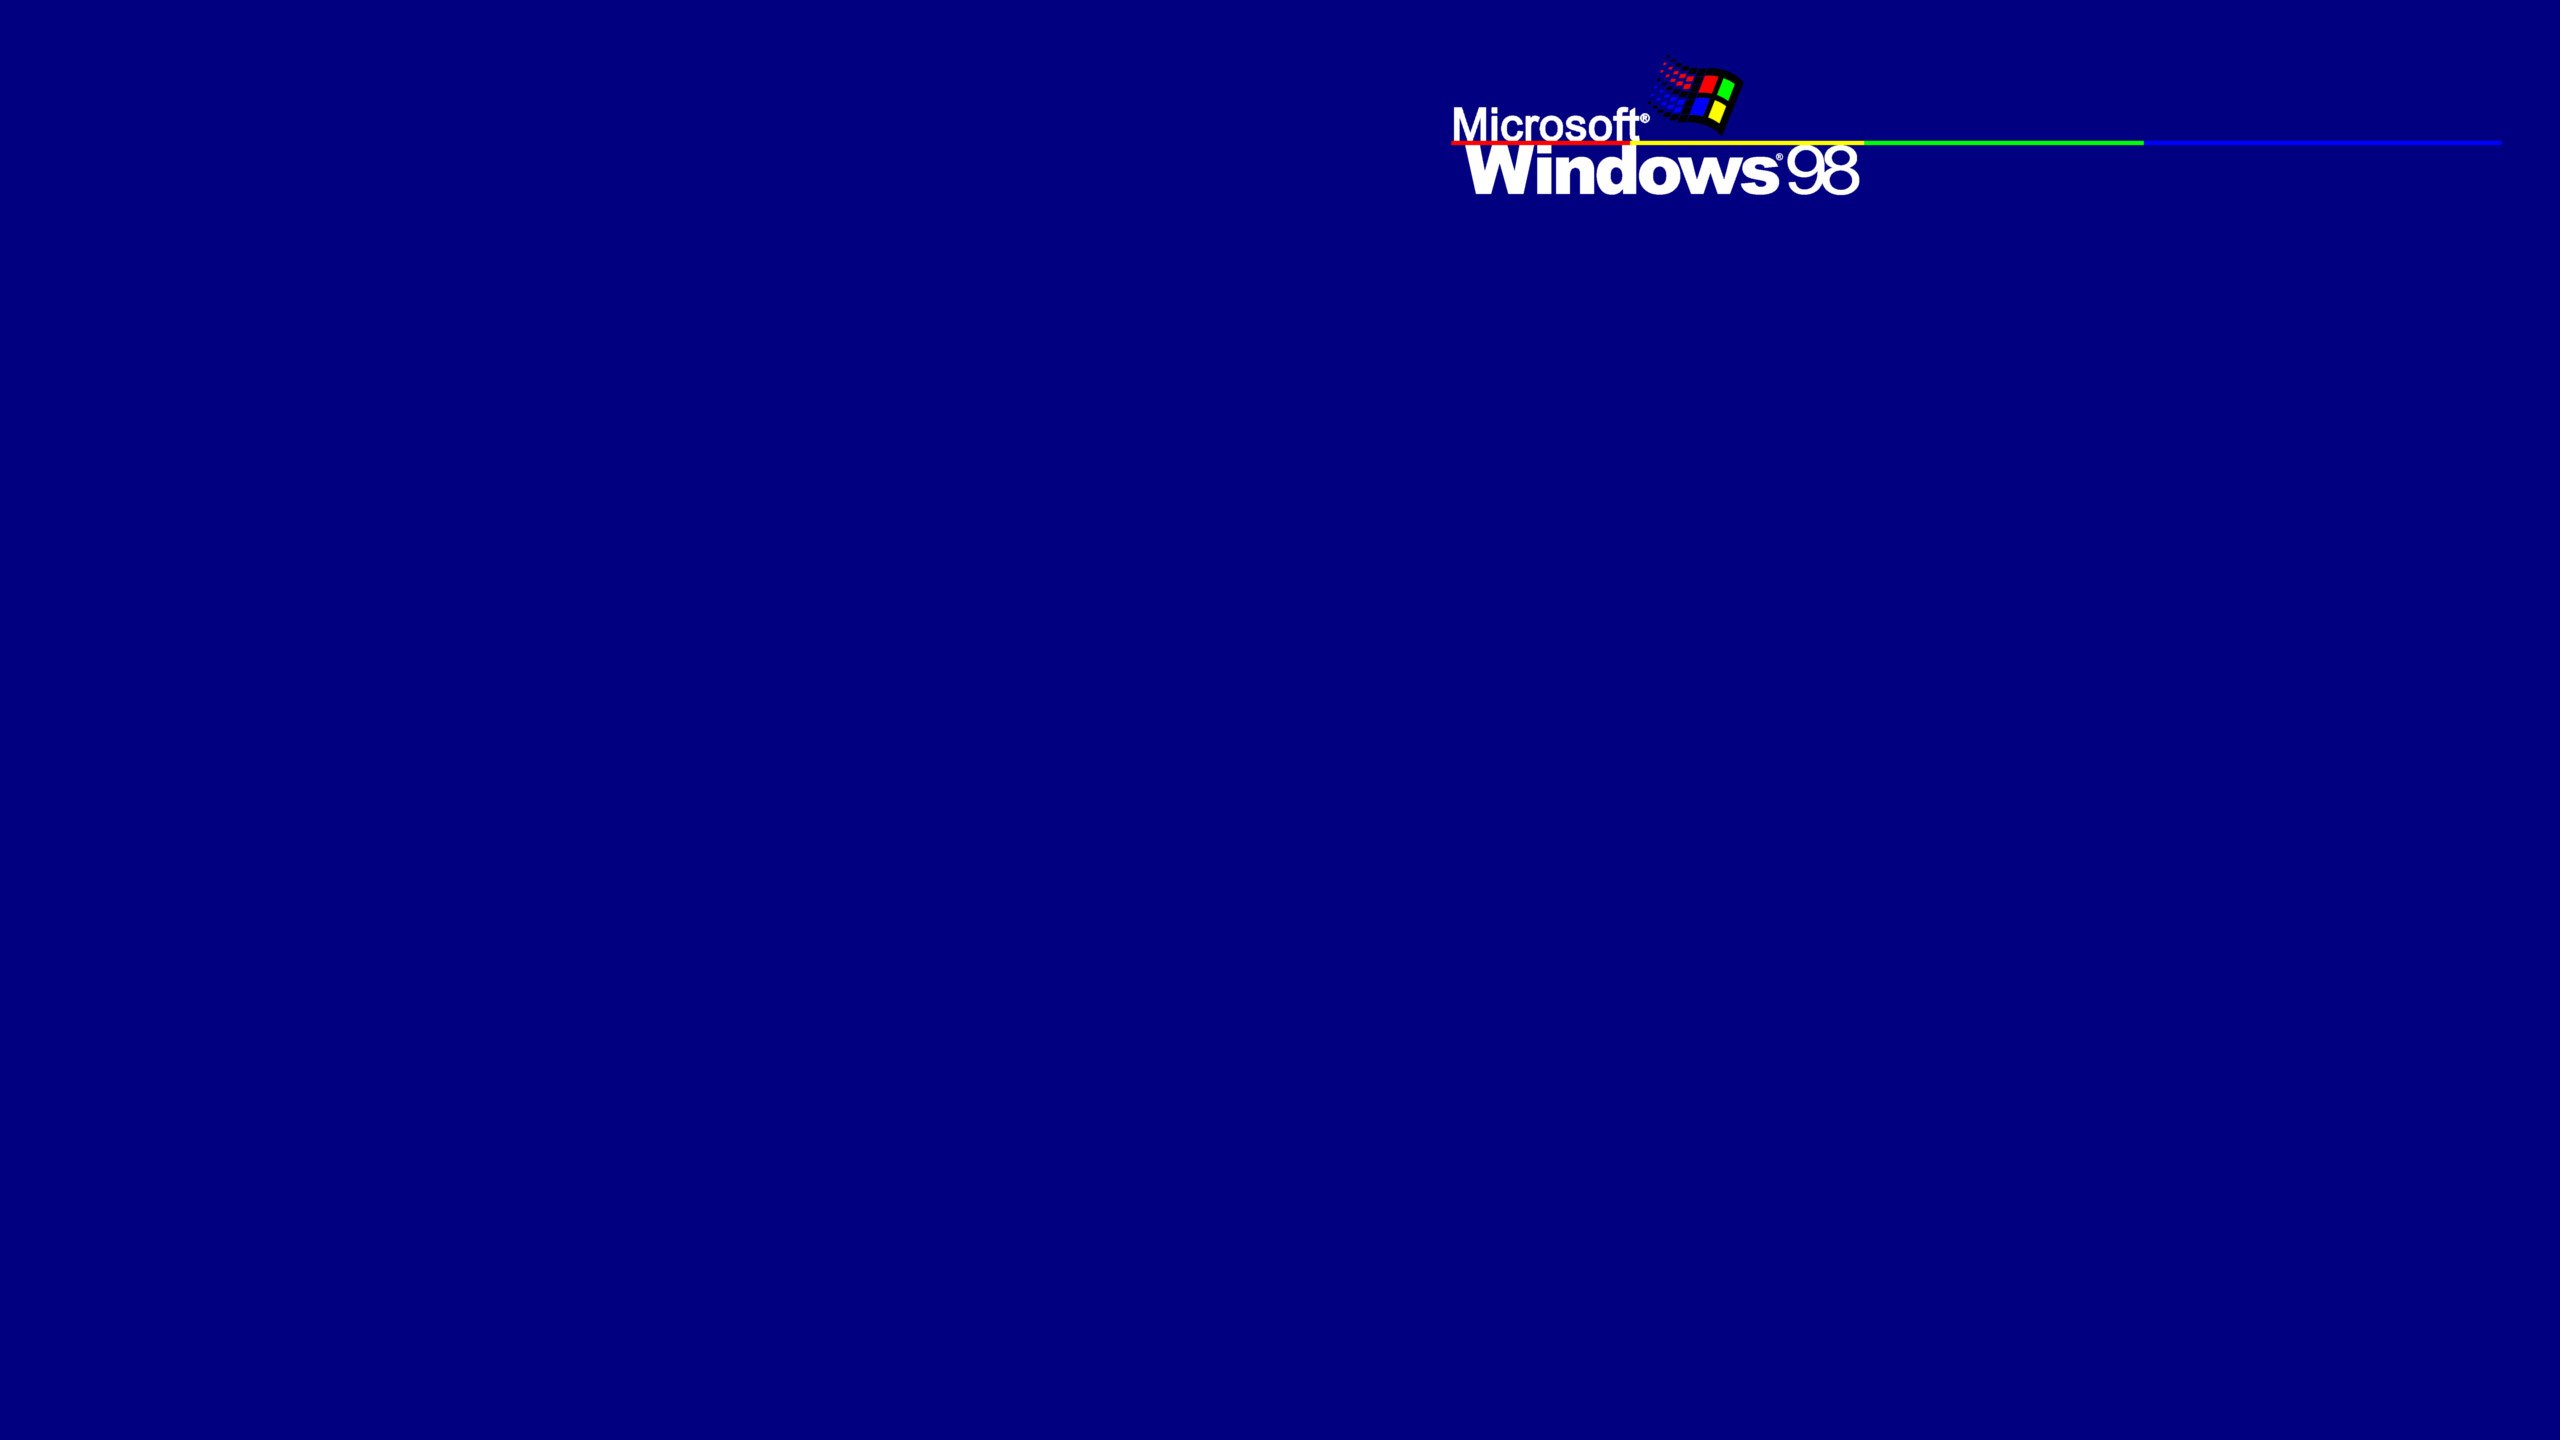 2560x1440 Windows 98 Active Wallpaper () : Wallpapers